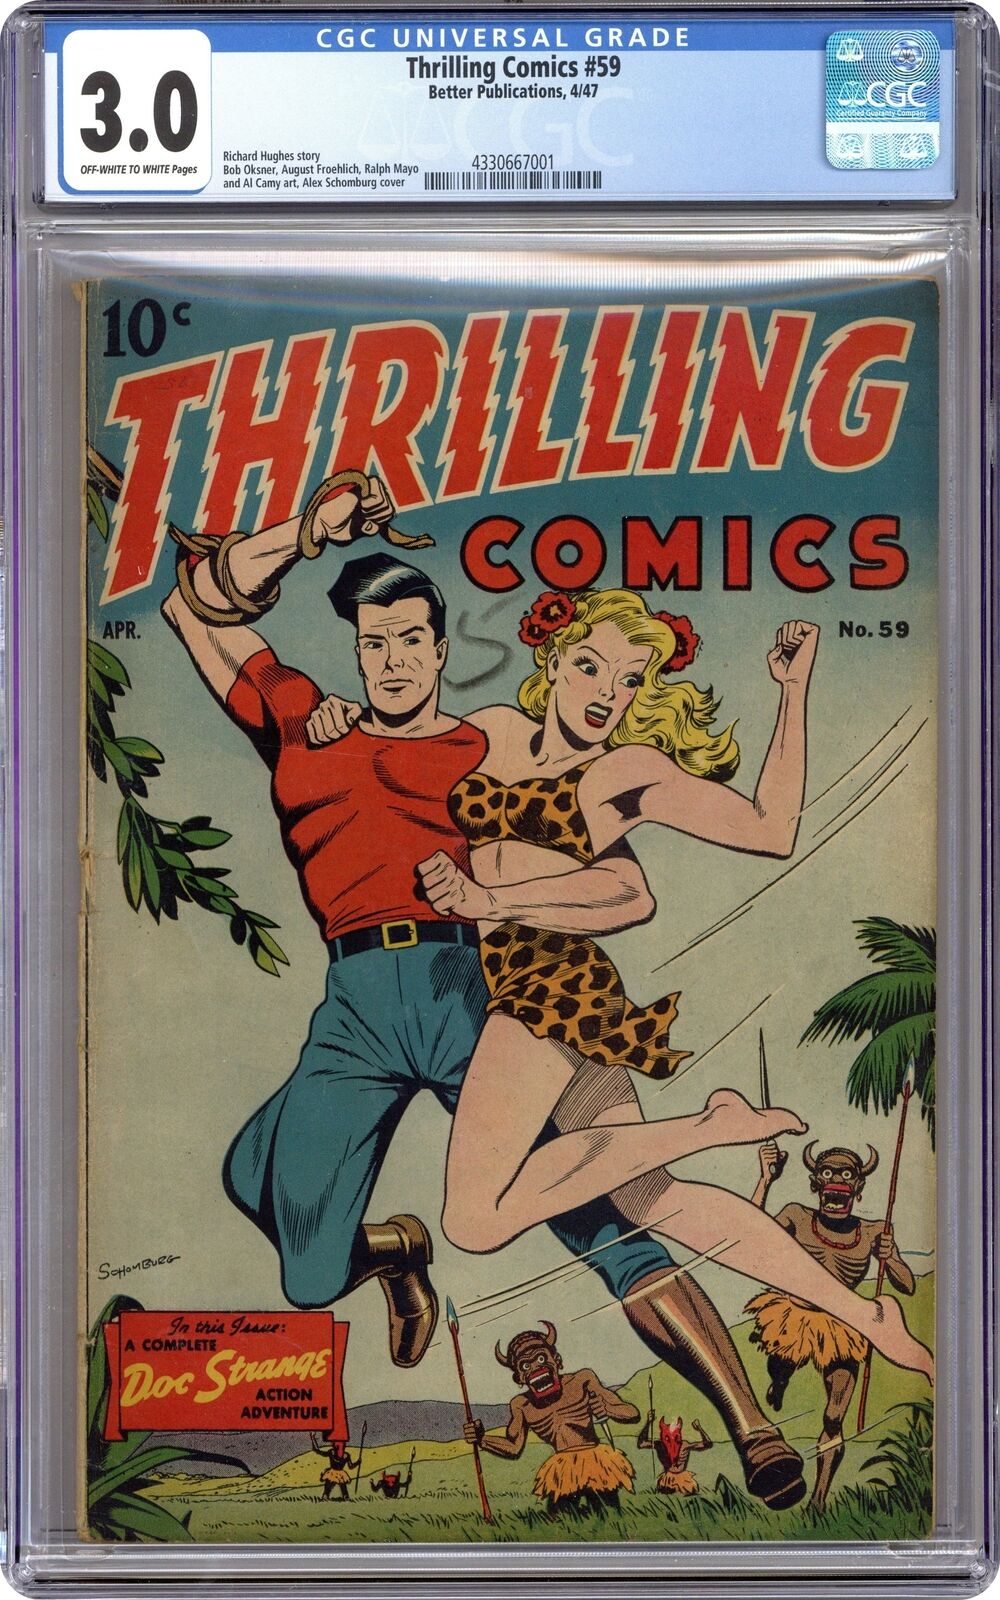 Thrilling Comics #59 CGC 3.0 1947 4330667001